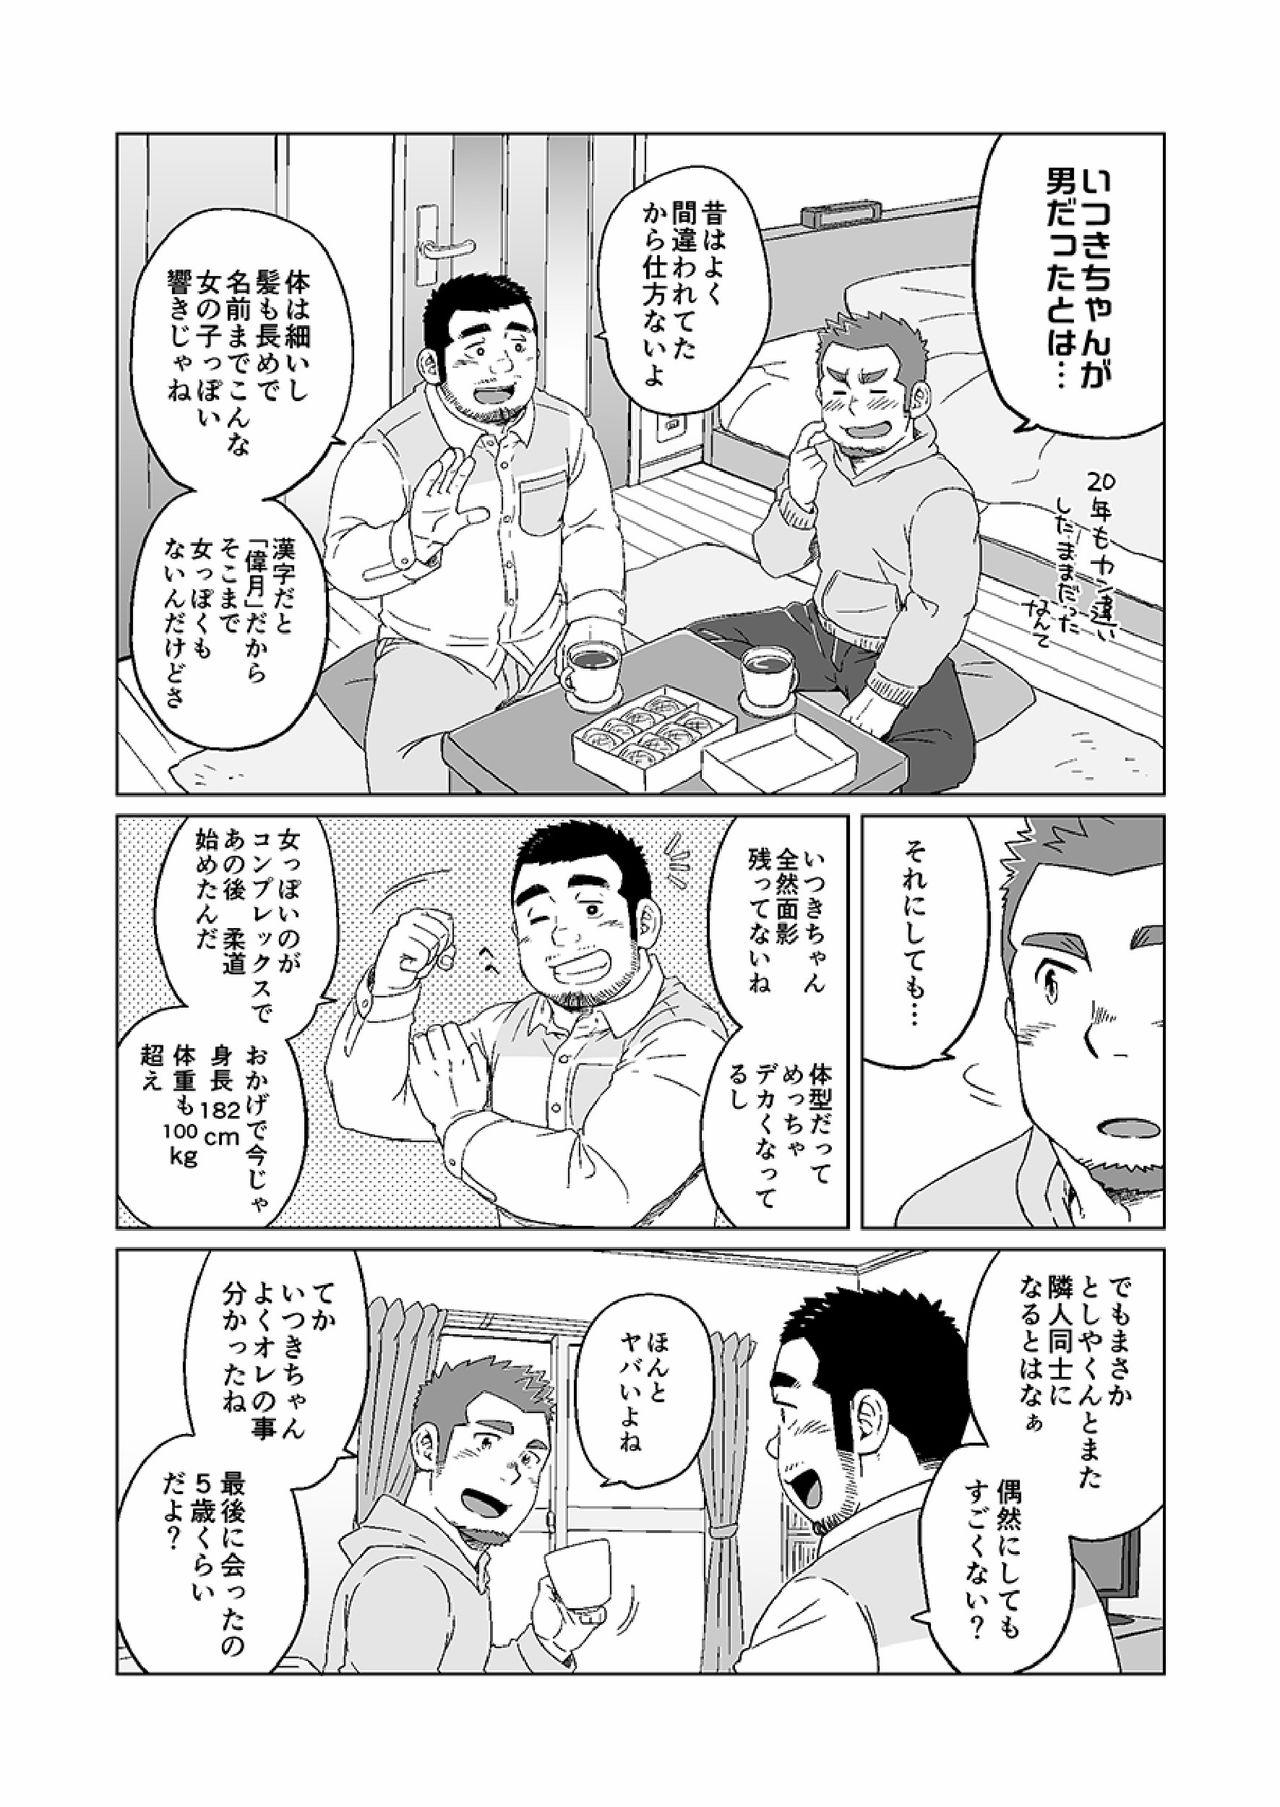 Bigblackcock Nengetsu to Kimi no Omokage - Original 19yo - Page 5